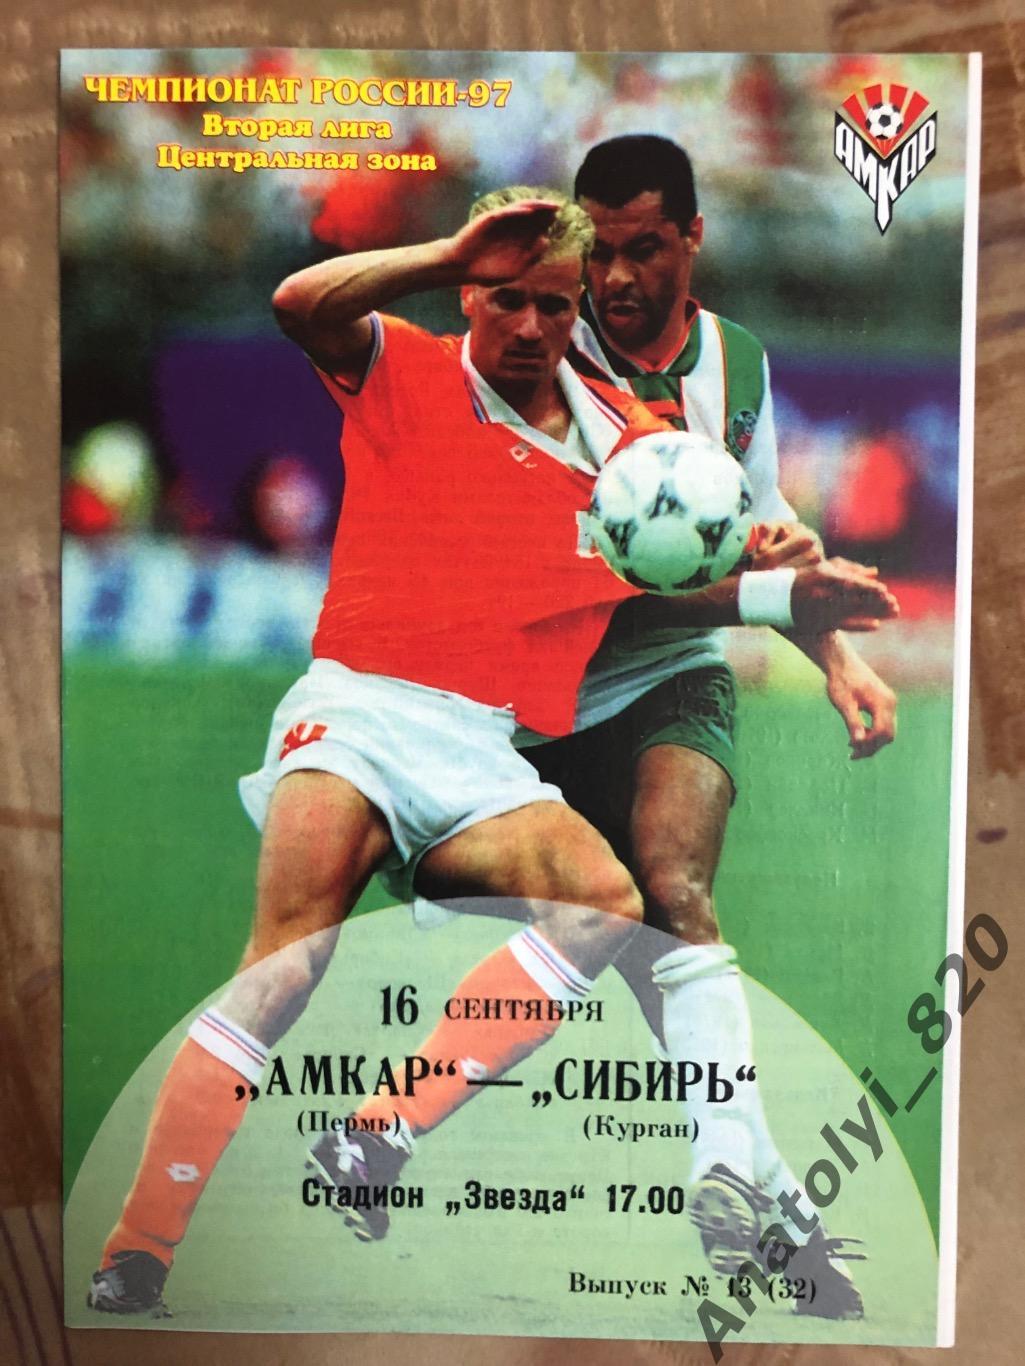 Амкар Пермь - Сибирь Курган 1997 год